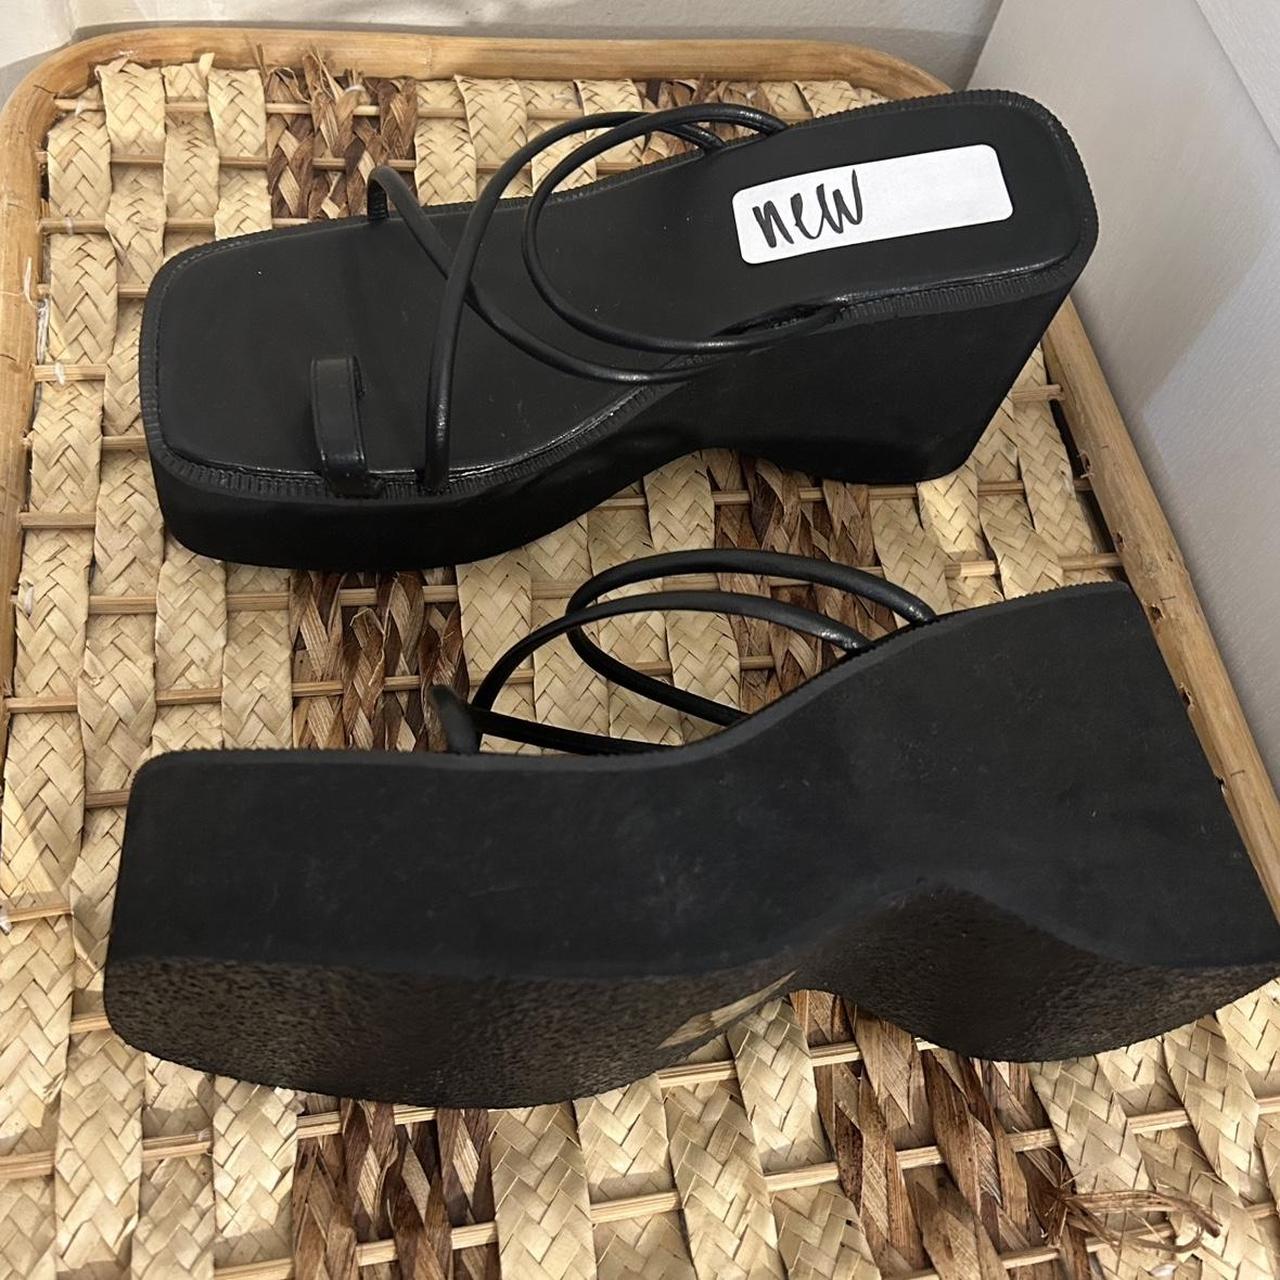 New black platform sandals - Depop